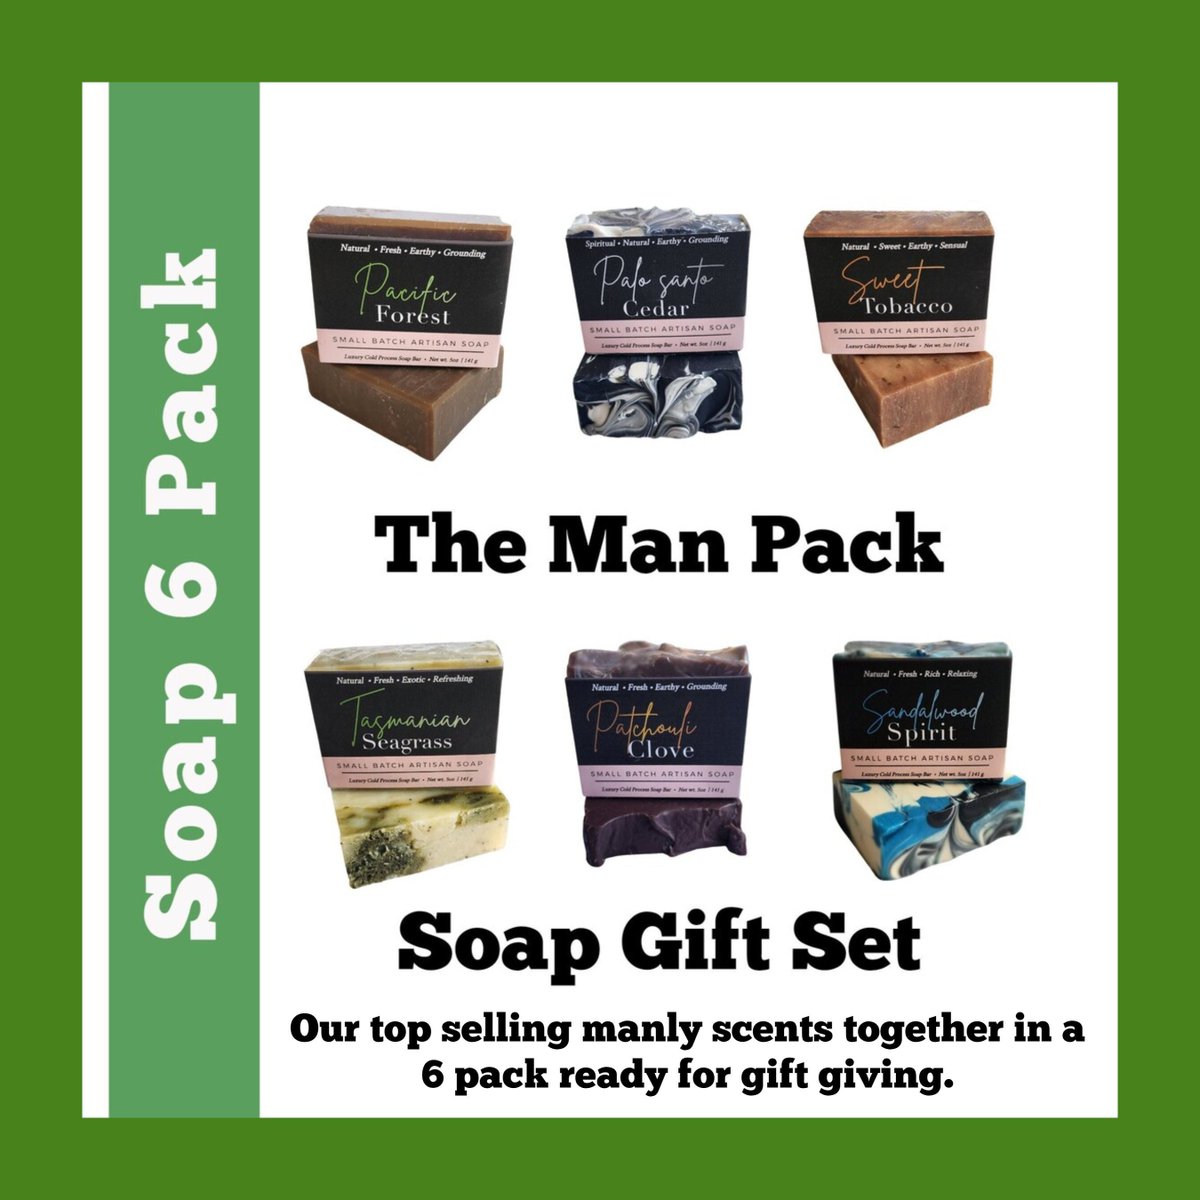 Soap Gift For Men Soap For Men Soap Gift Set 6 Pack s Christmas Gifts Vegan Soap Sampler Handmade Natural Soap Organic Soap Valentine's Gift tuppu.net/43f57f42 #Christmasgifts #Soapgift #vegan #selfcare #soap #gifts #handmadesoap #SoapGift